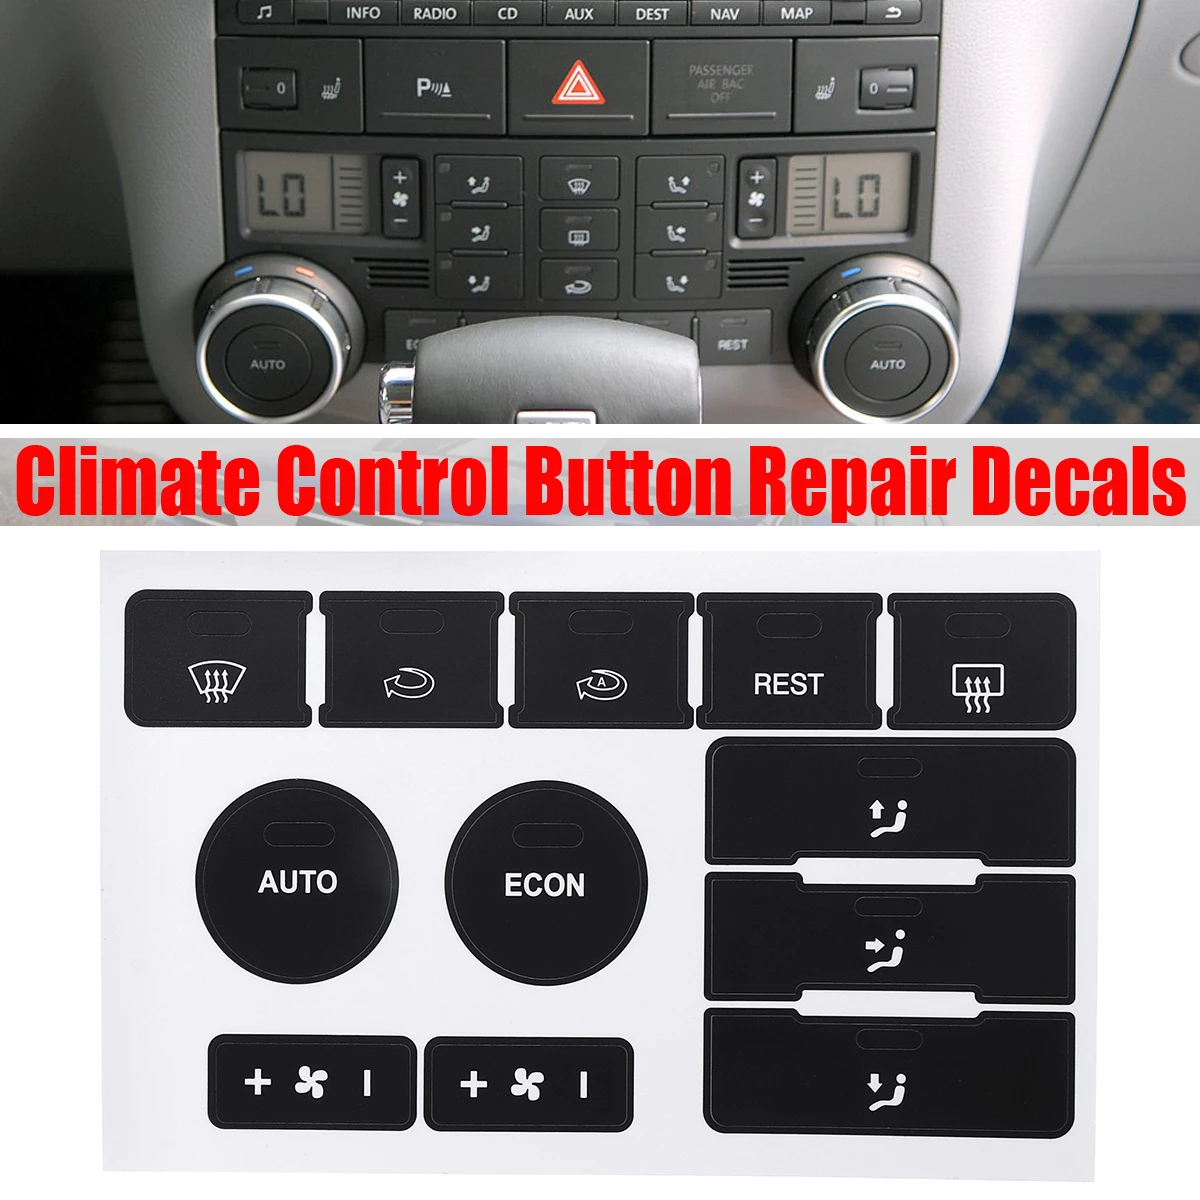 1 шт. Матовая черная кнопка климат-контроля, ремонтные наклейки Для Фольксваген Туарег 2004 2005 2006 2007 2008 2009